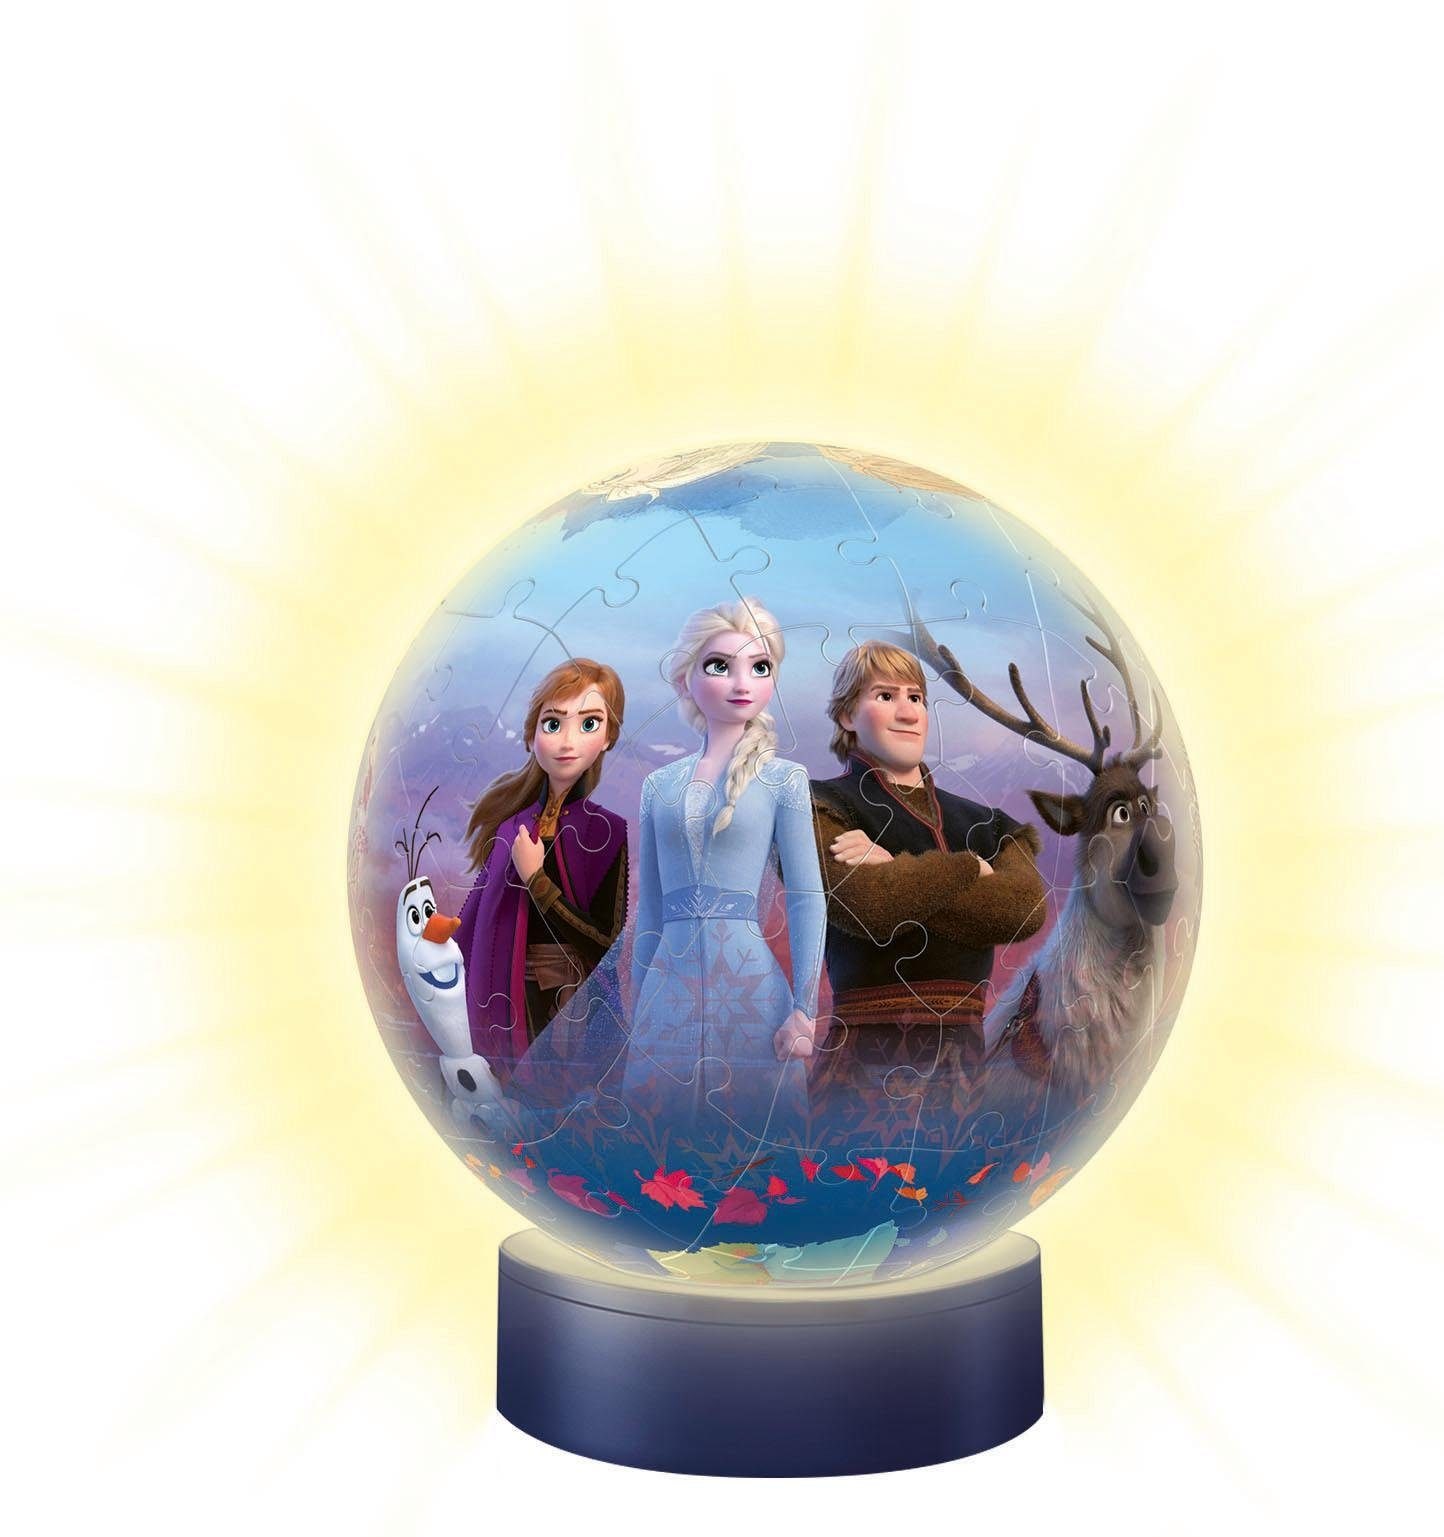 Ravensburger Puzzleball »Nachtlicht Disney Frozen II«, mit Leuchtsockel inkl. LEDs; FSC® - schützt Wald - weltweit